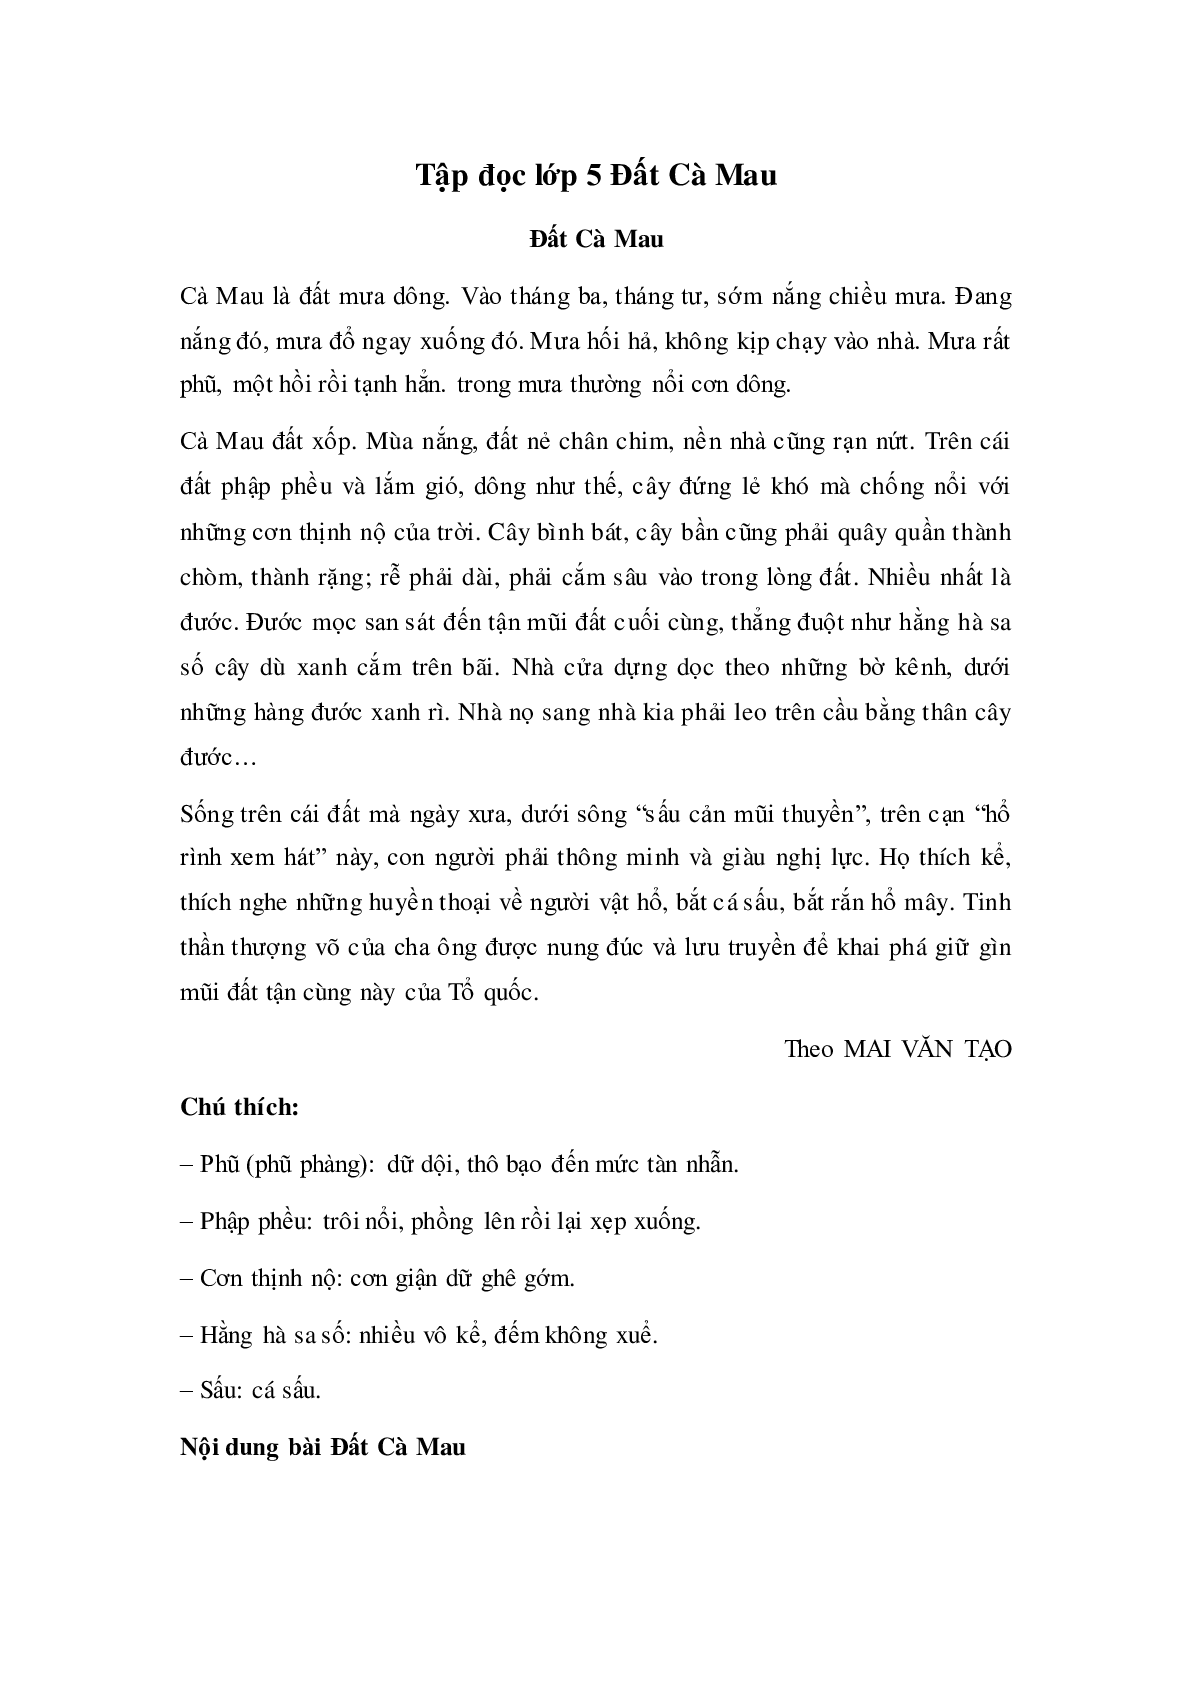 Soạn Tiếng Việt lớp 5: Tập đọc: Đất Cà Mau mới nhất (trang 1)